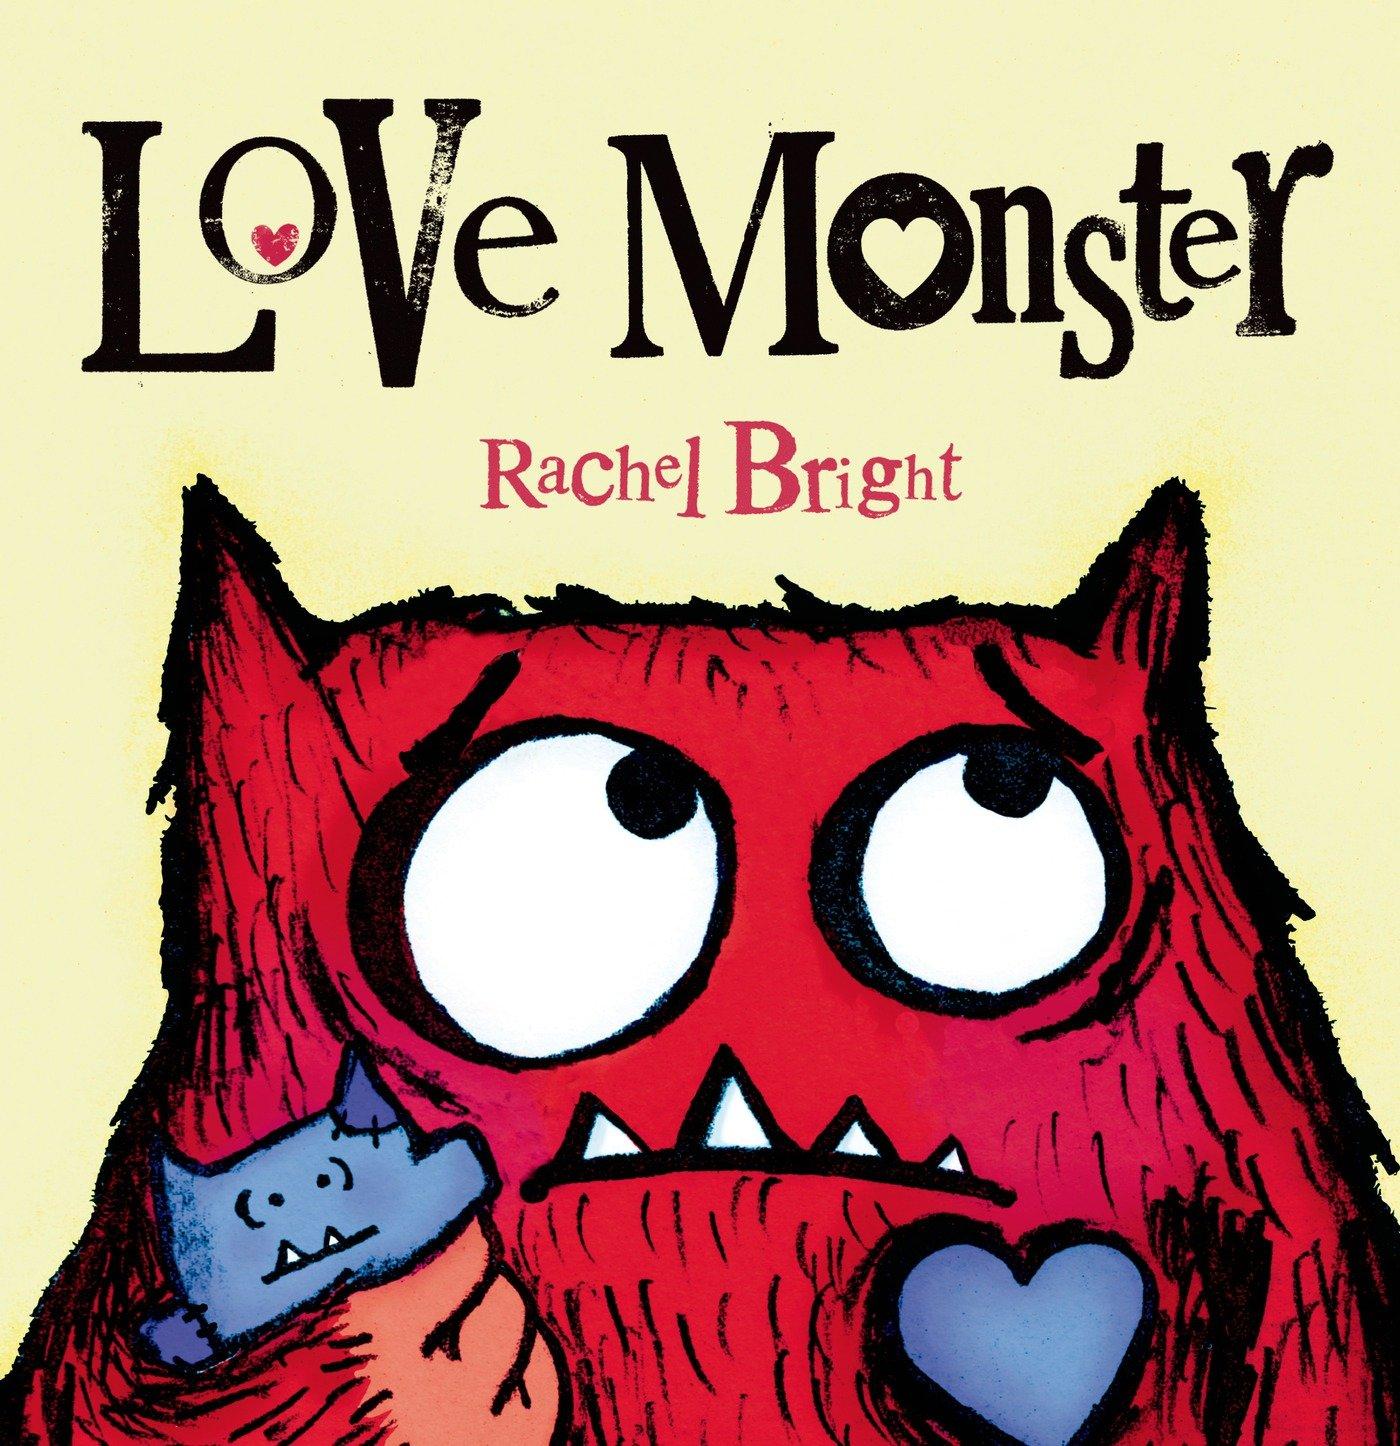 Love monster book